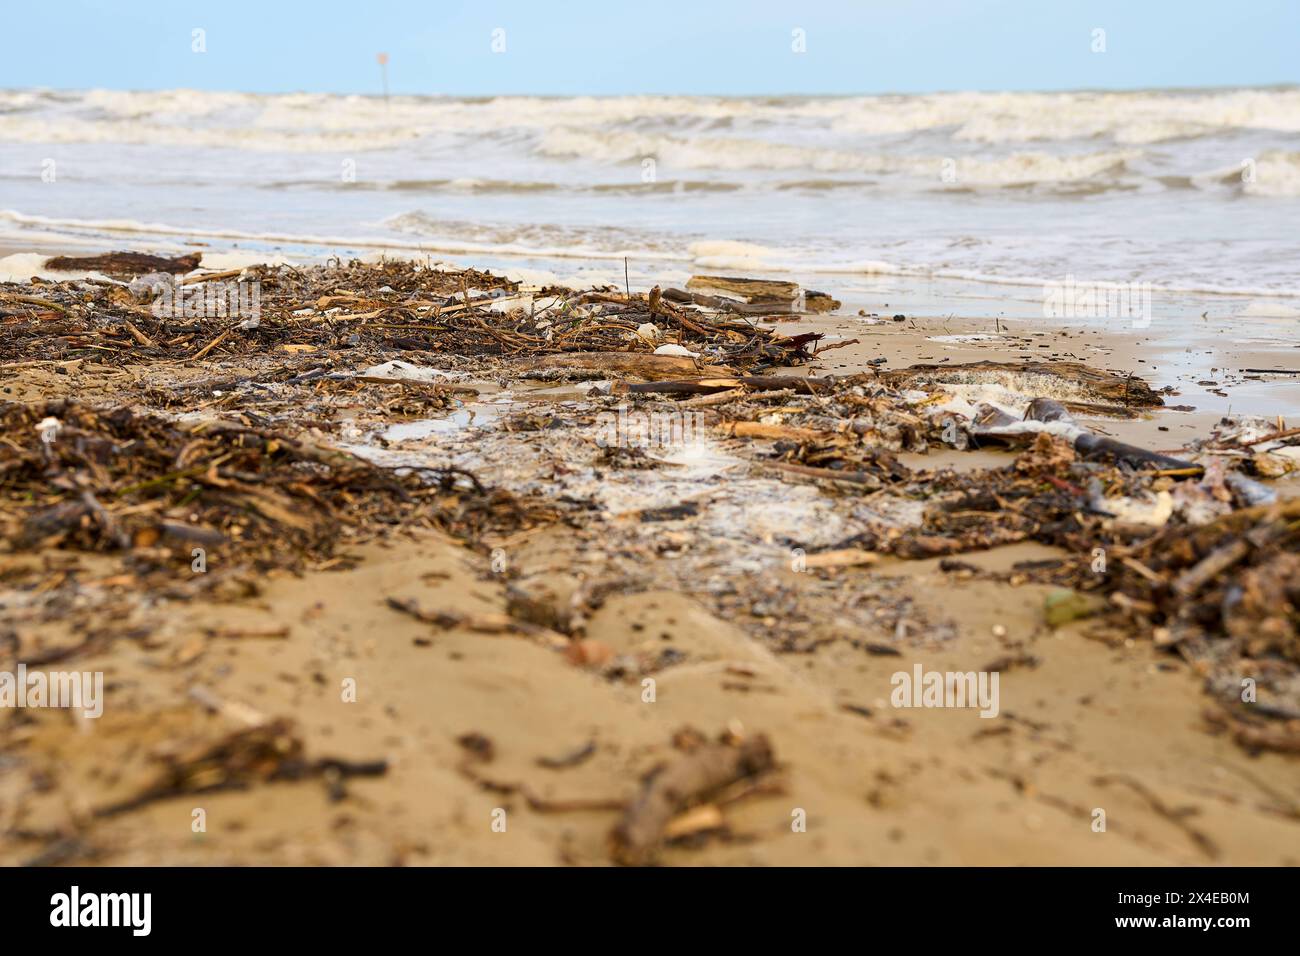 Lido di Jesolo, Italien - 2. Mai 2024: Nach einem Sturm verstreut. Die Wellen haben Holz und Plastik aus dem Meer gespült. Verschmutzungskonzept *** Verschmutzer Strand nach einem Sturm. Die Wellen haben aus dem Meer Treiholz und Plastik angespült. Umweltverschmutzungskonzept Stockfoto